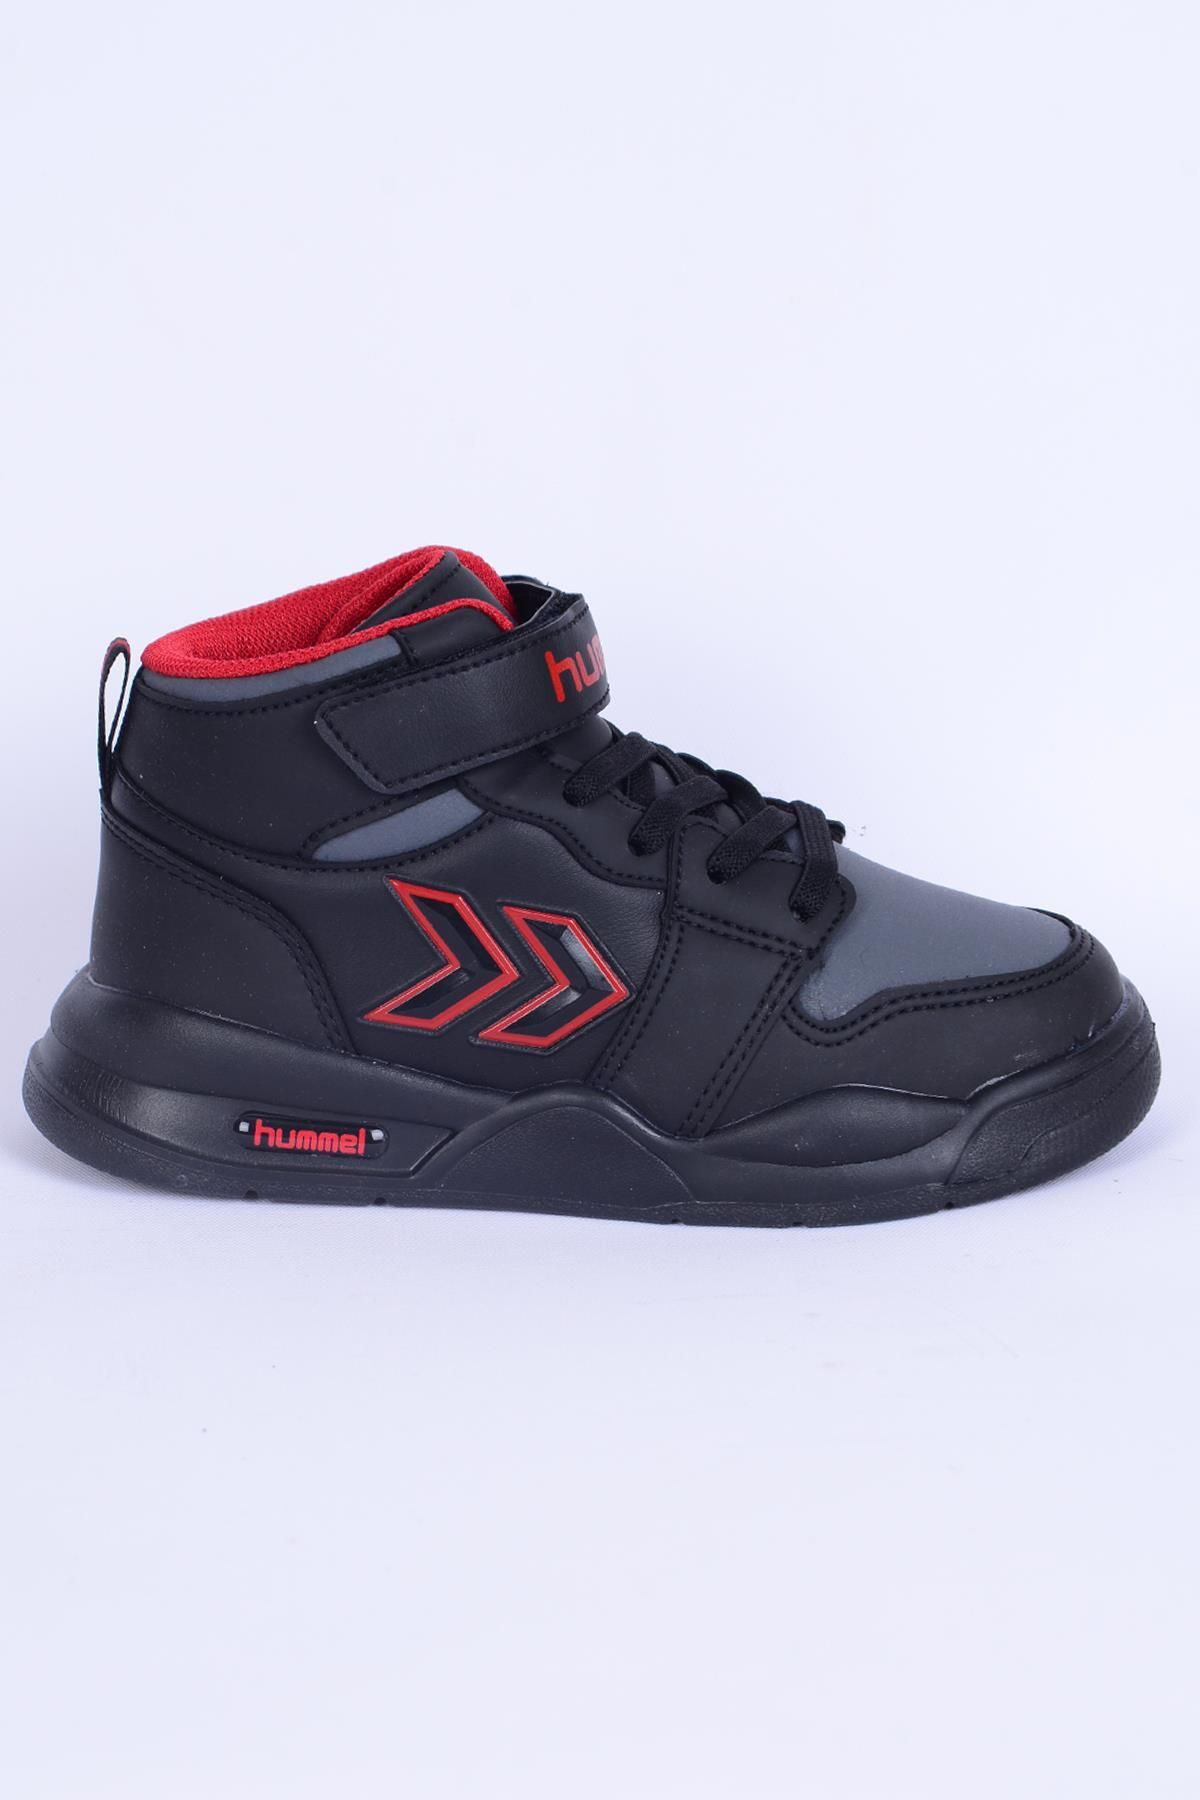 hummel 900380-2025 Dragon Jr Siyah-kırmızı Erkek Çocuk Spor Ayakkabı